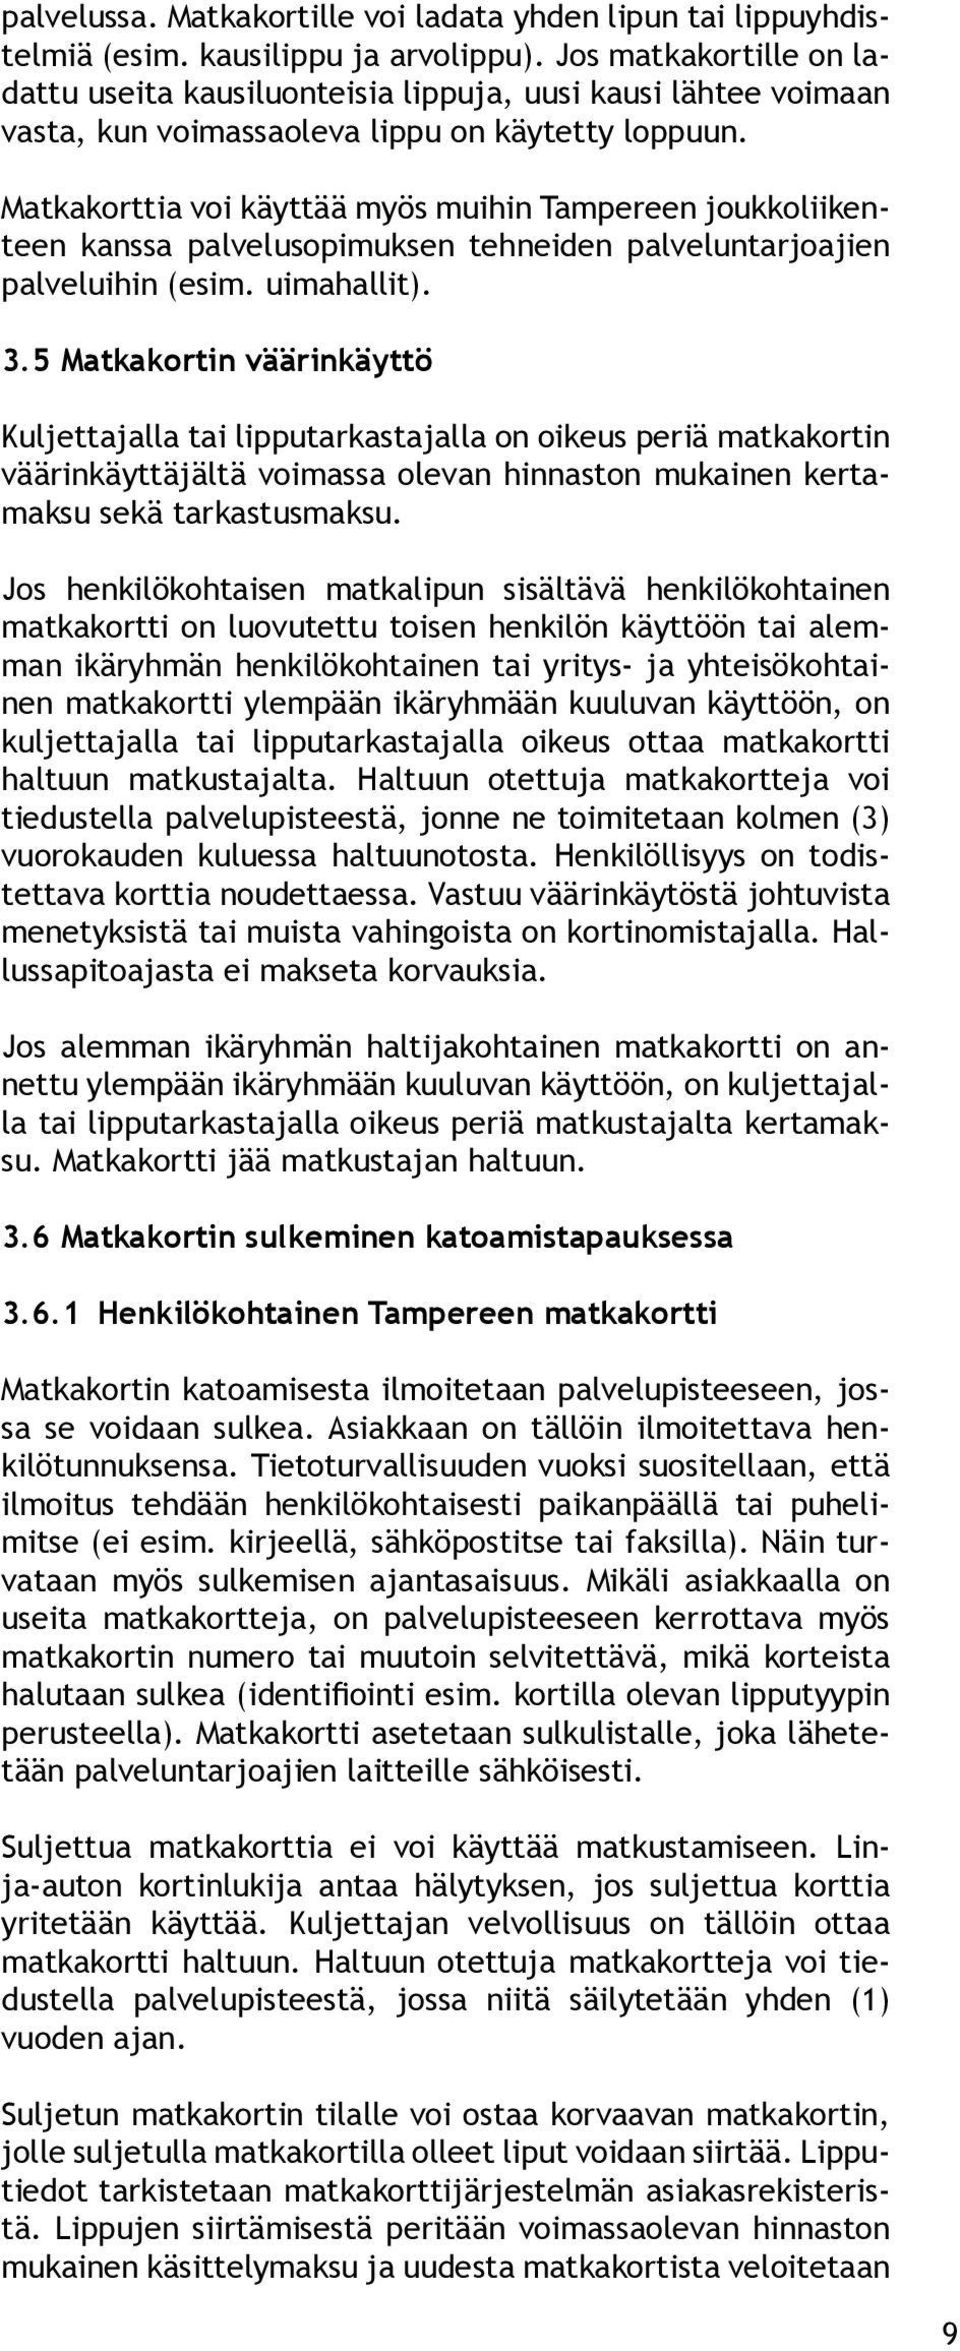 Matkakorttia voi käyttää myös muihin Tampereen joukkoliikenteen kanssa palvelusopimuksen tehneiden palveluntarjoajien palveluihin (esim. uimahallit). 3.